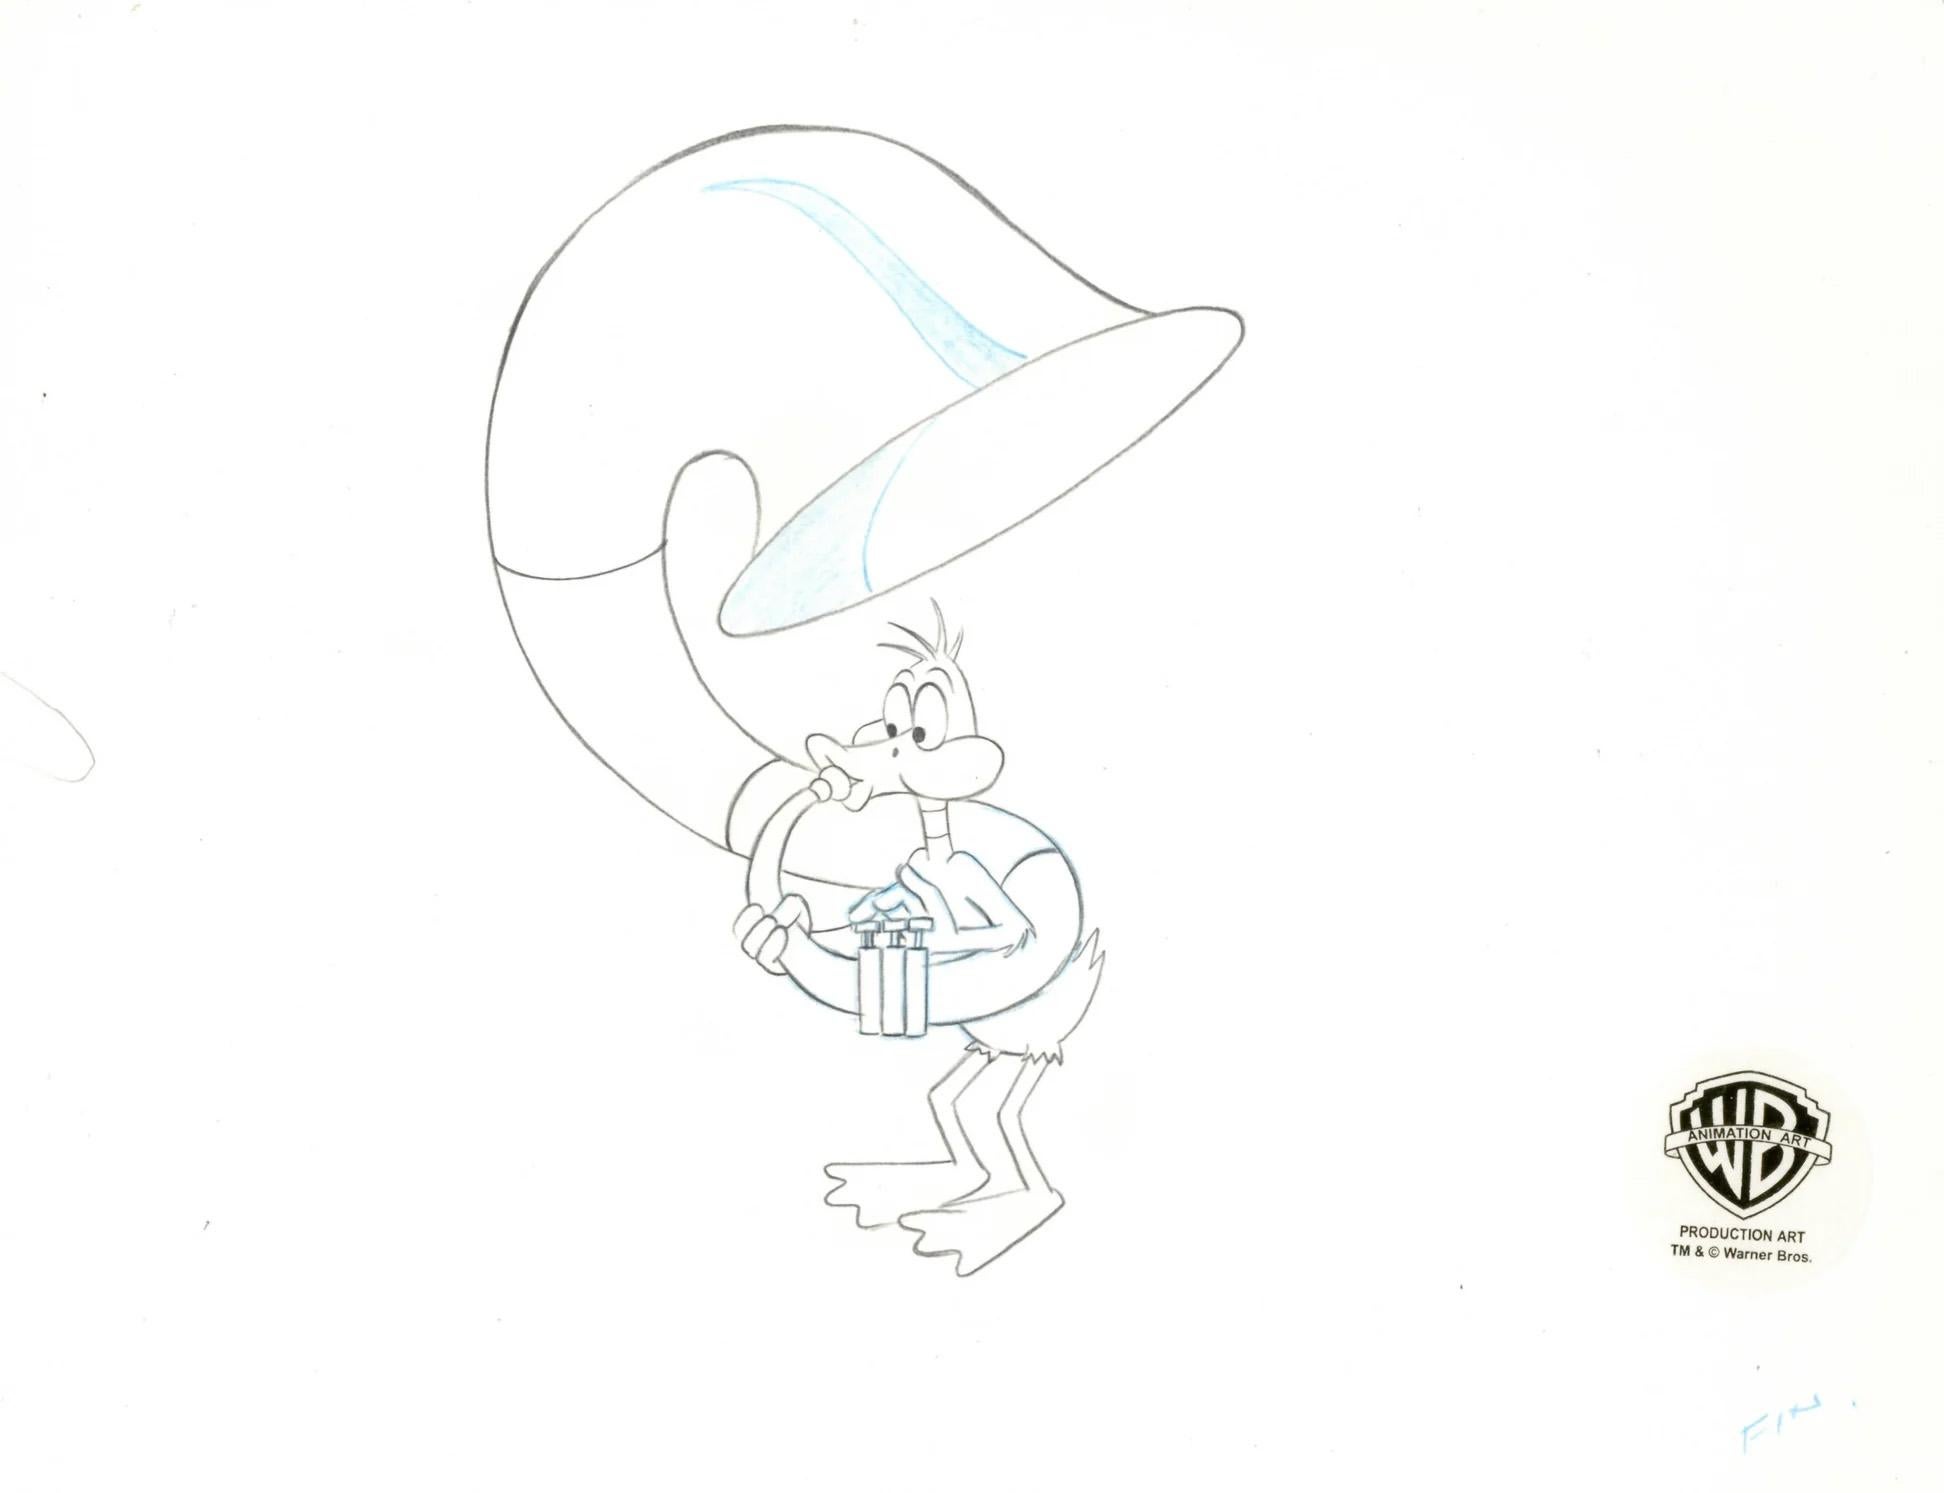 Looney Tunes Original-Produktionszeichnung: Daffy Duck – Art von Looney Tunes Studio Artists